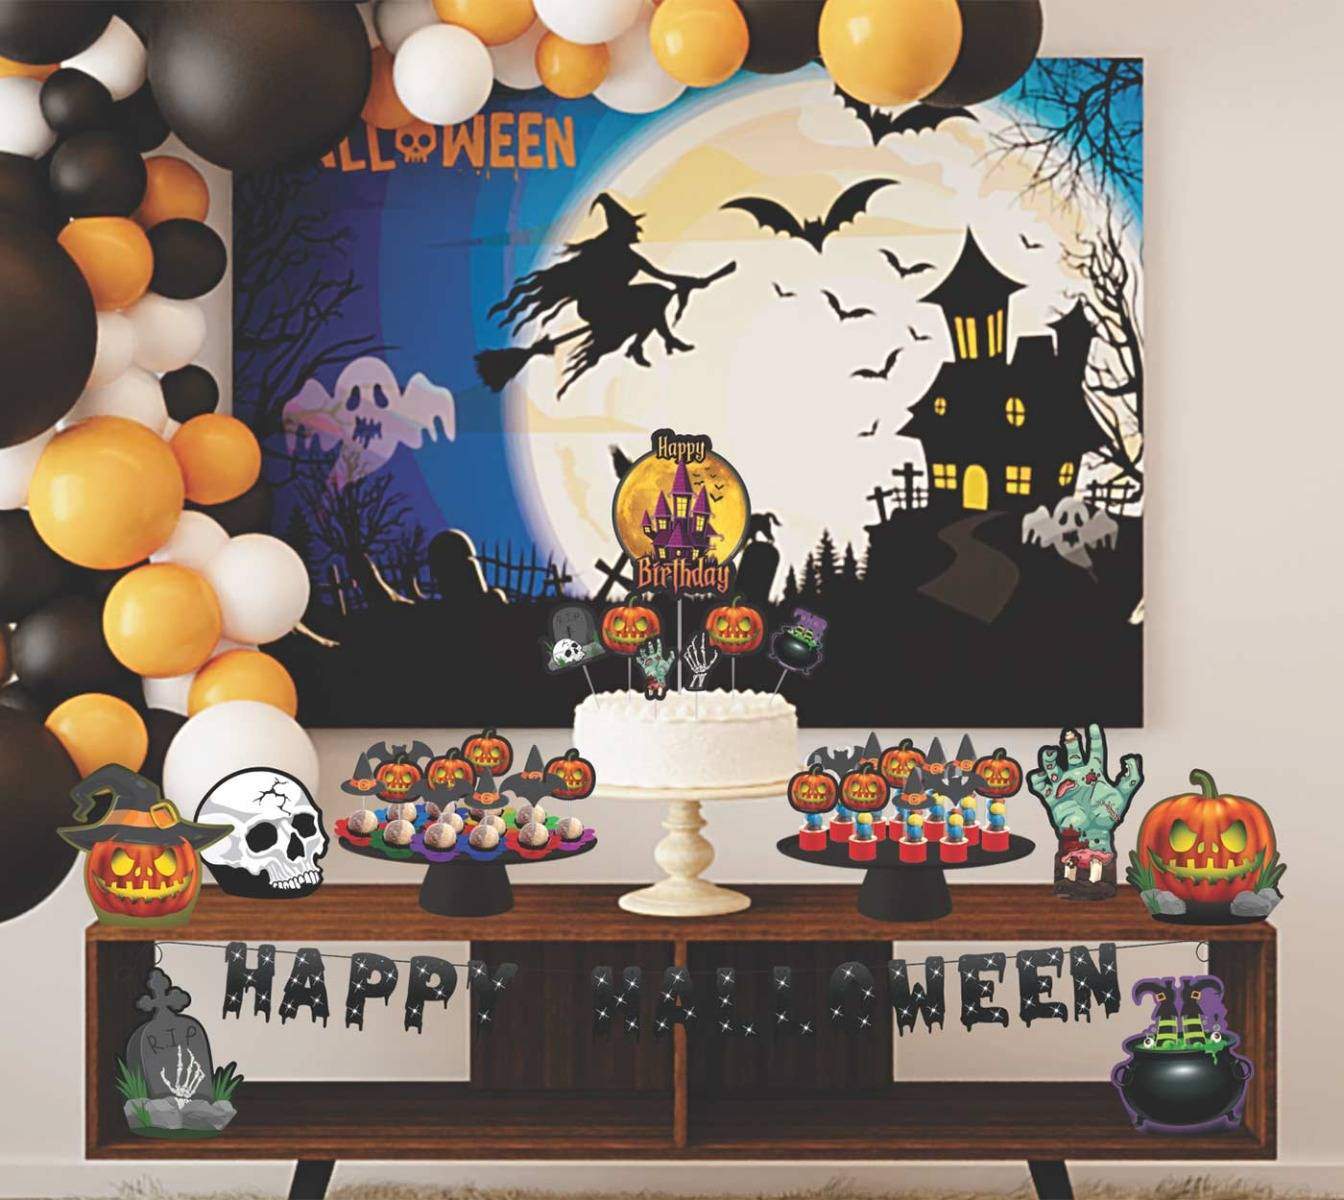 Fantasia Arlequina Infantil Halloween - Loja de Balões, Artigos para Festas  e Fantasias